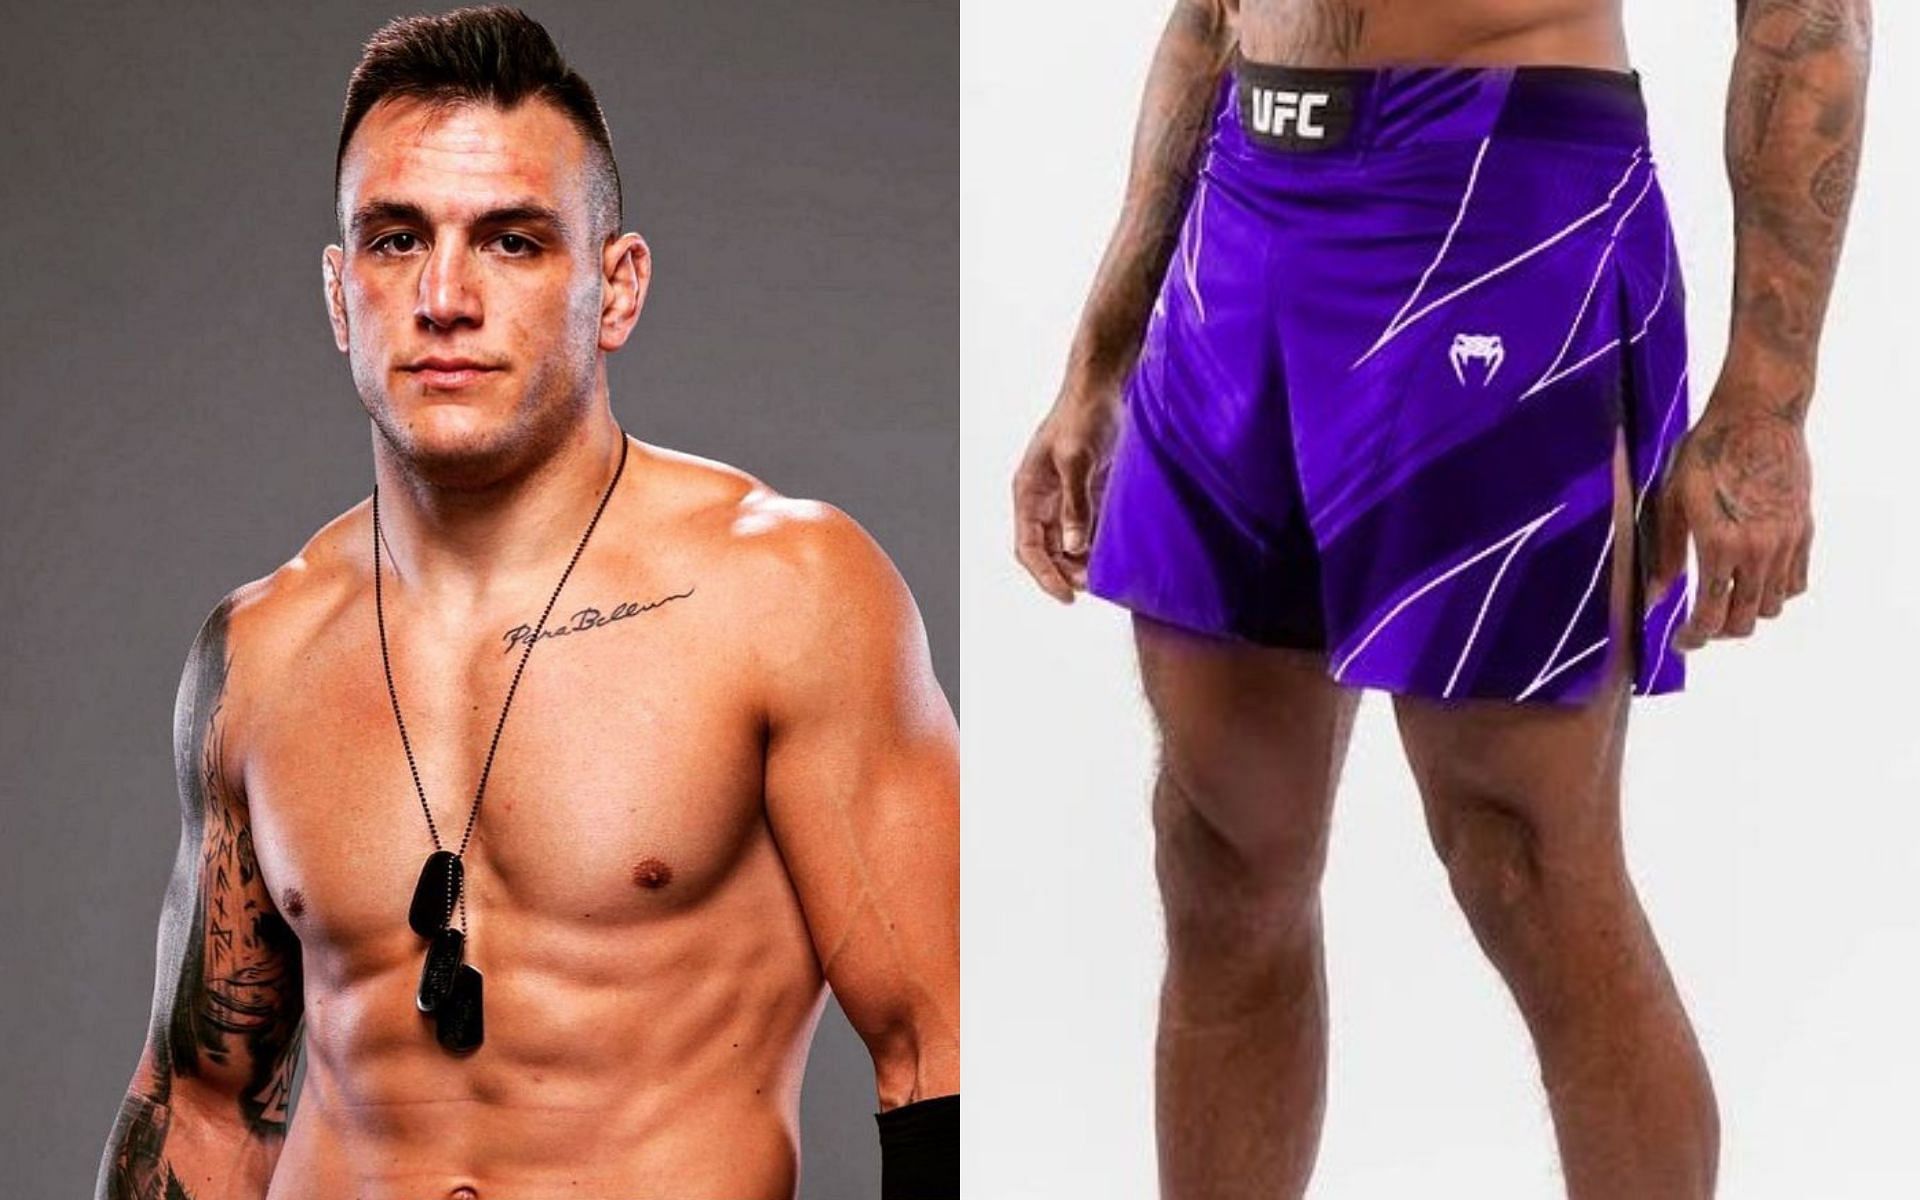 Cody Brundage wanted purple shorts [Image courtesy: @cody_brundage_ on Instagram, @WonderbreadMMA on Twitter]